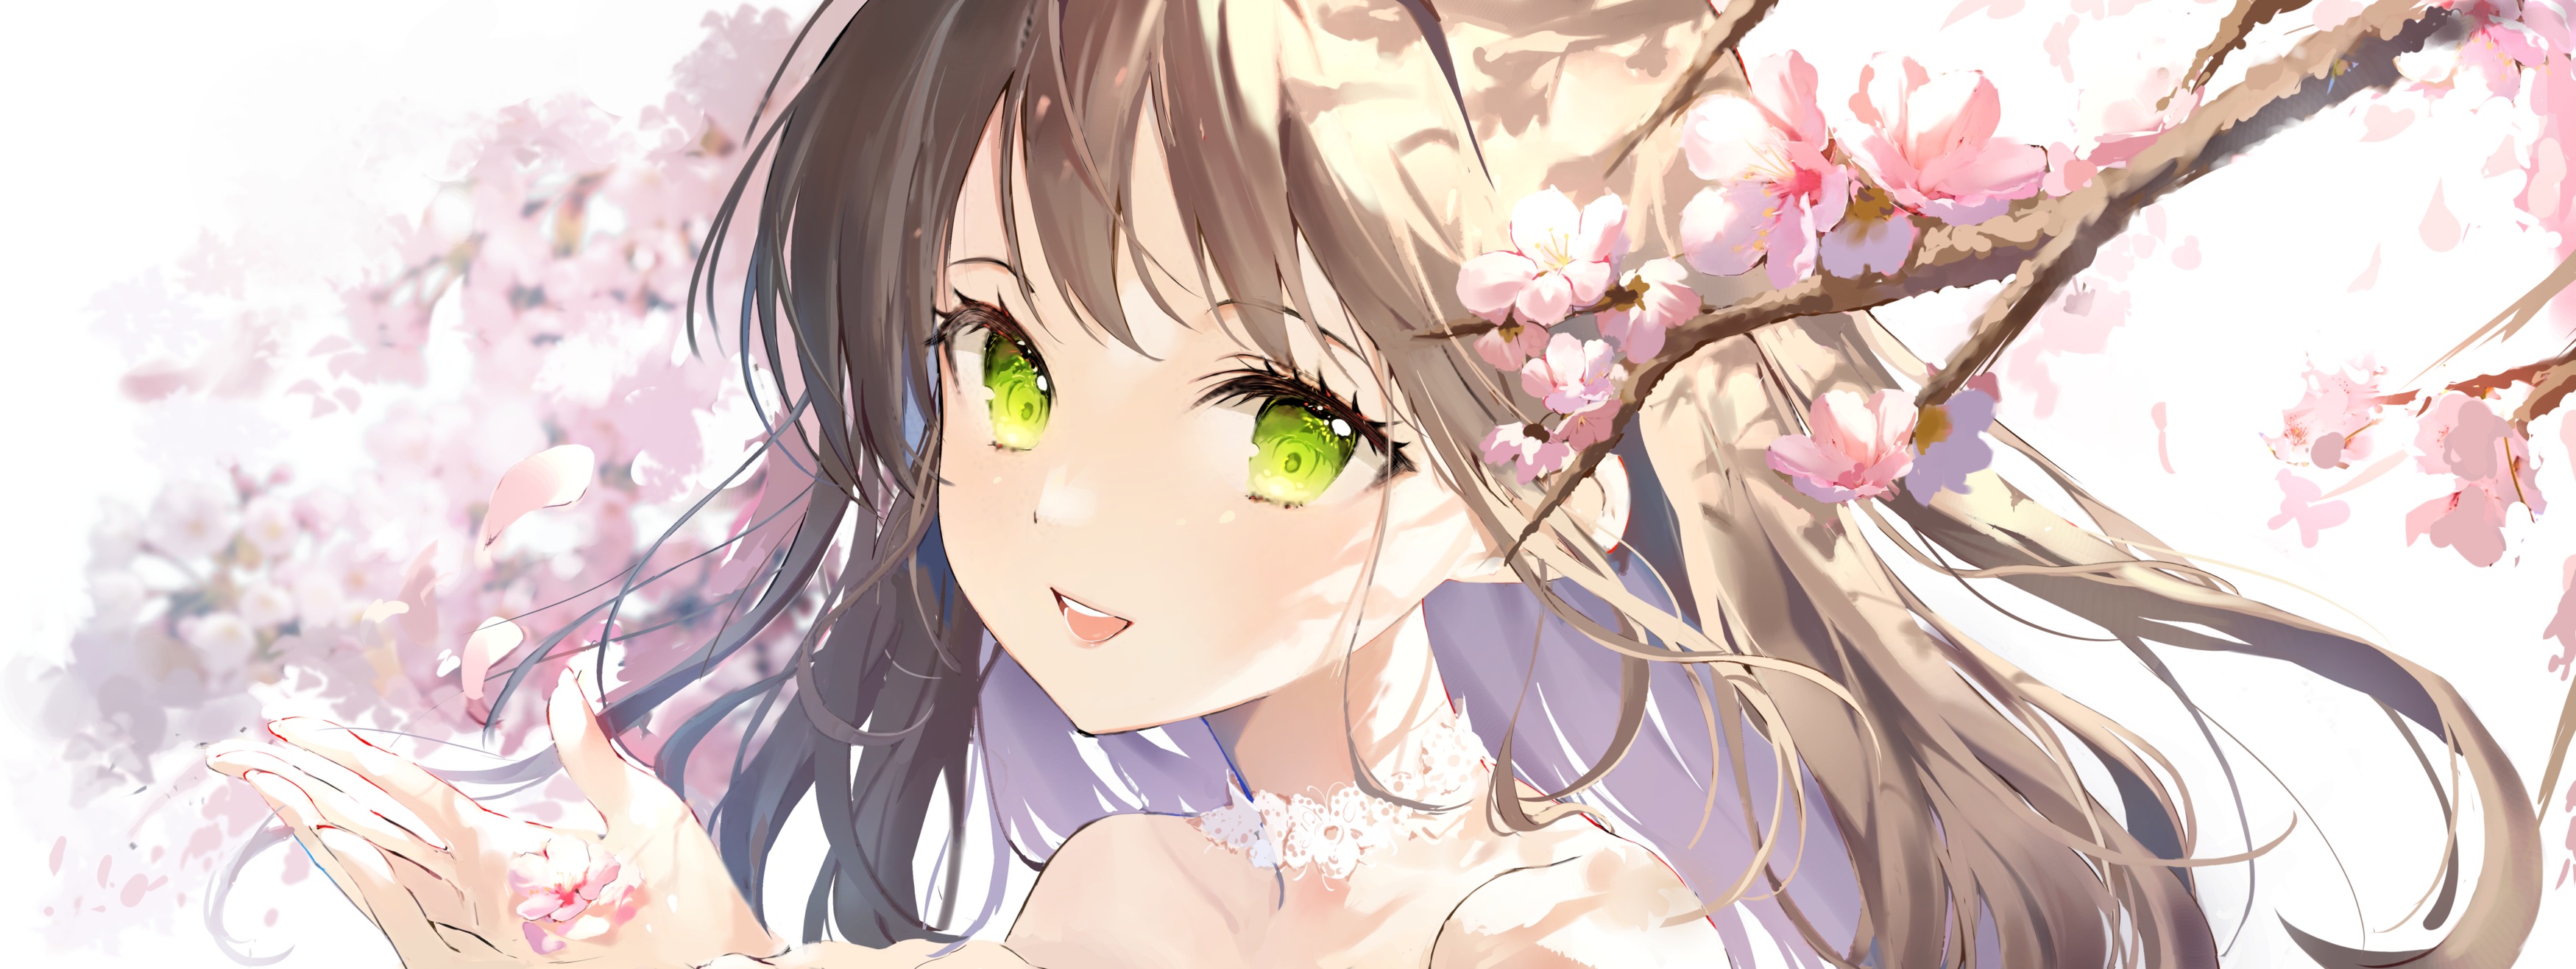 Anime Anime Girls Sakura Tree Green Eyes Brunette 3500x1316